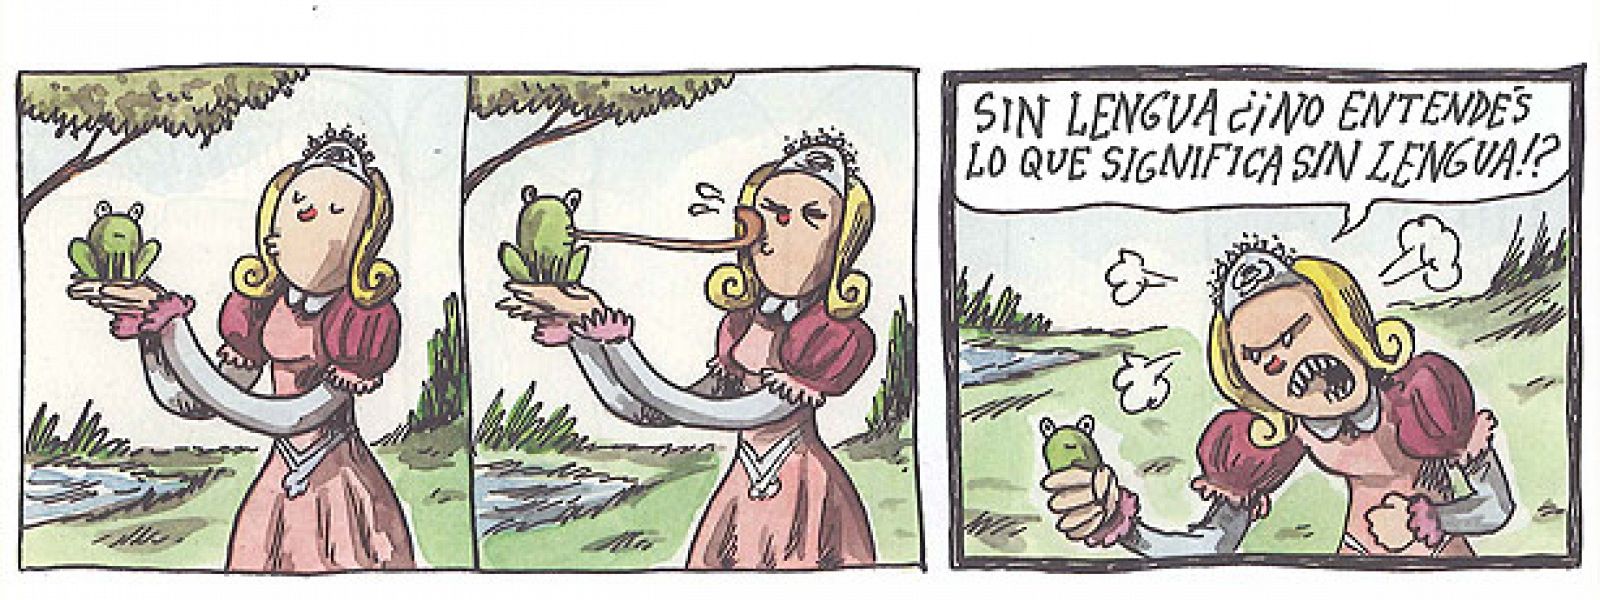 Tira de 'Macanudo', de Liniers